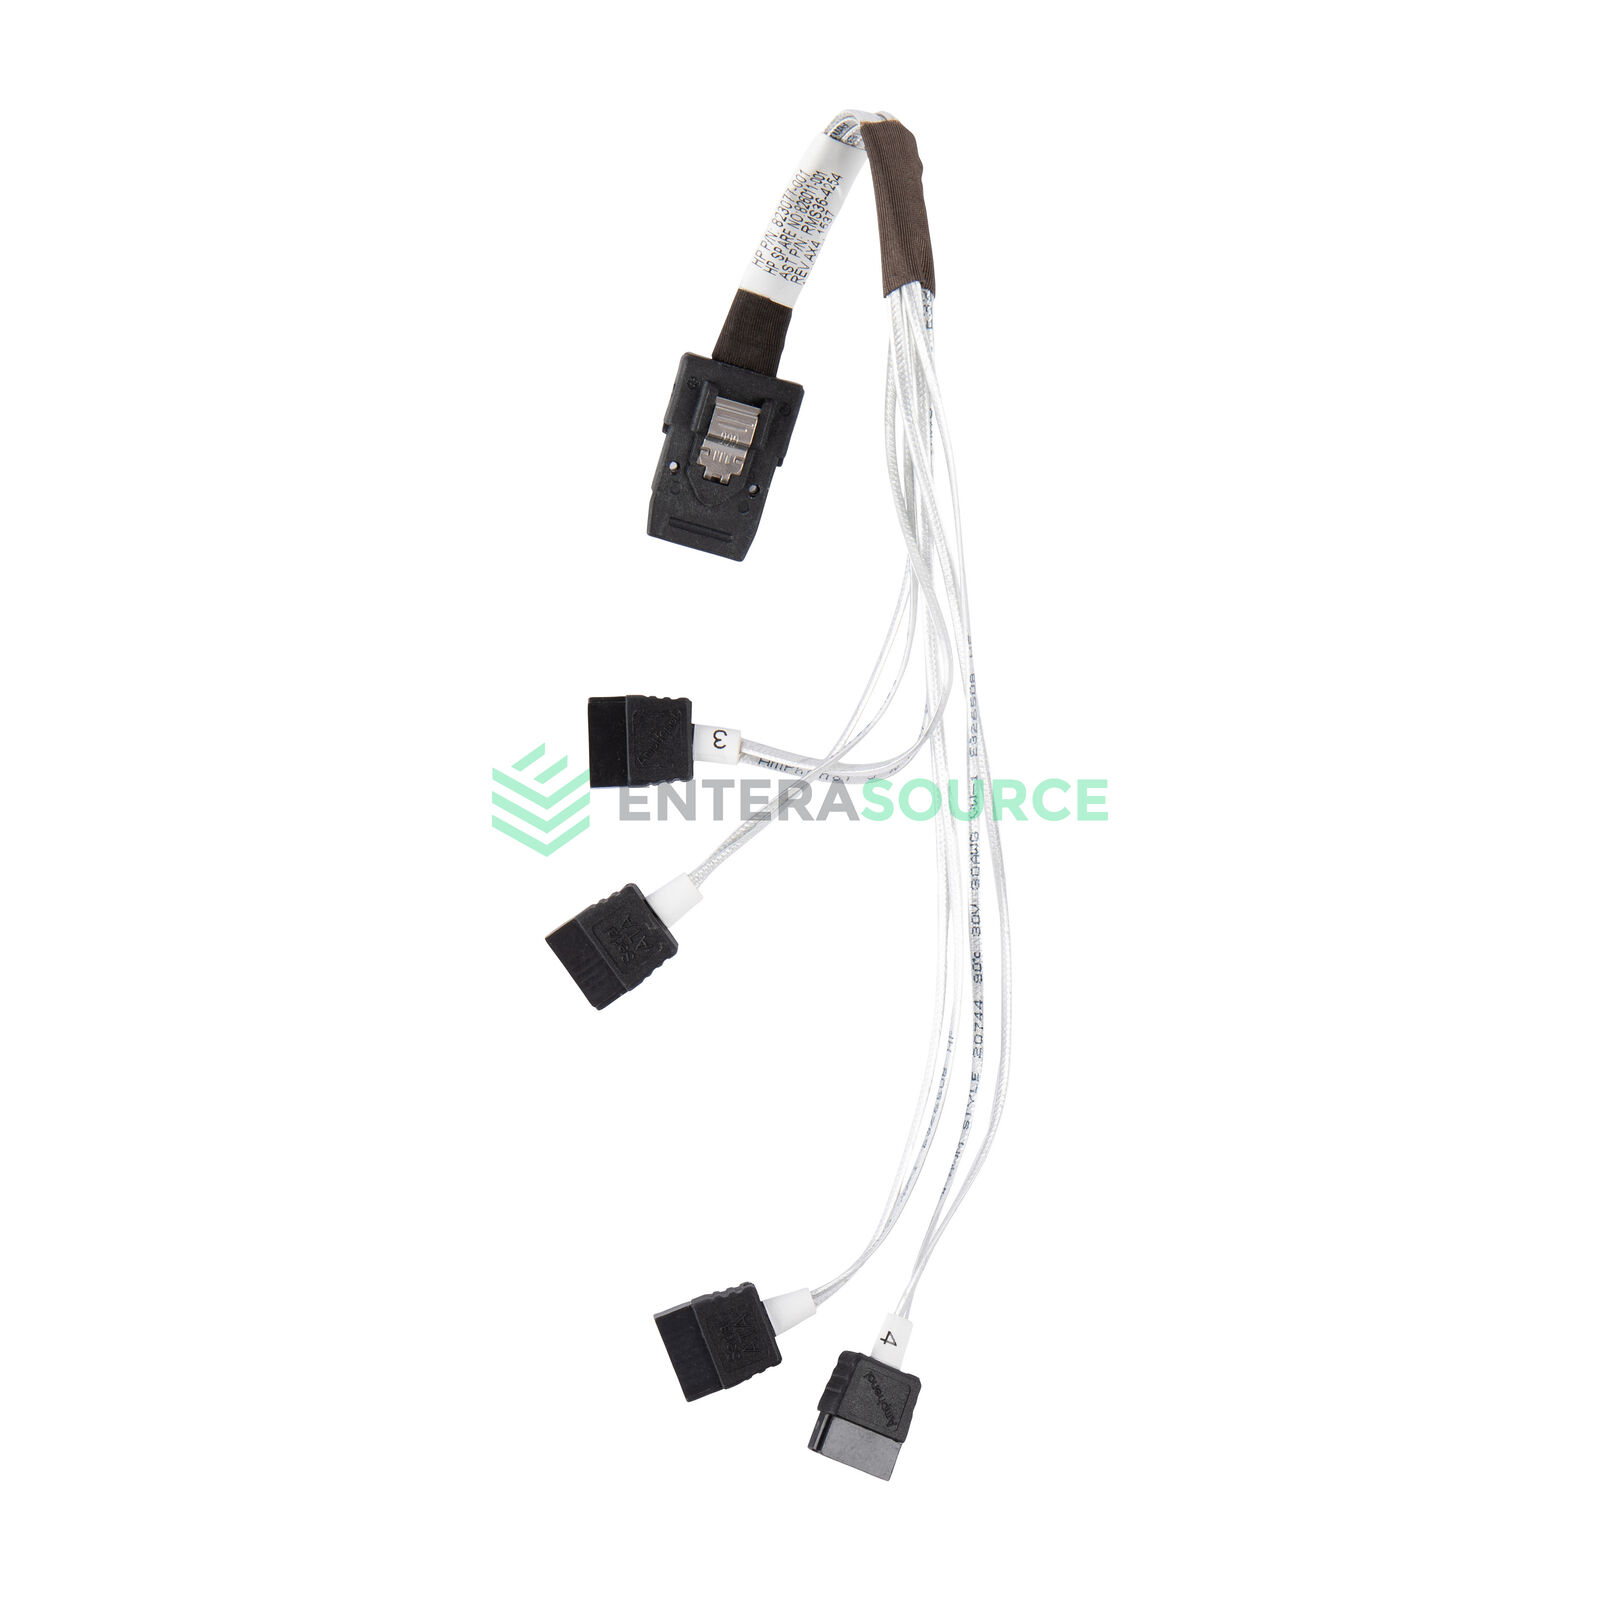 HP 823077-001 Mini SAS (SFF-8087) to (4x) SATA Power Cable Kit